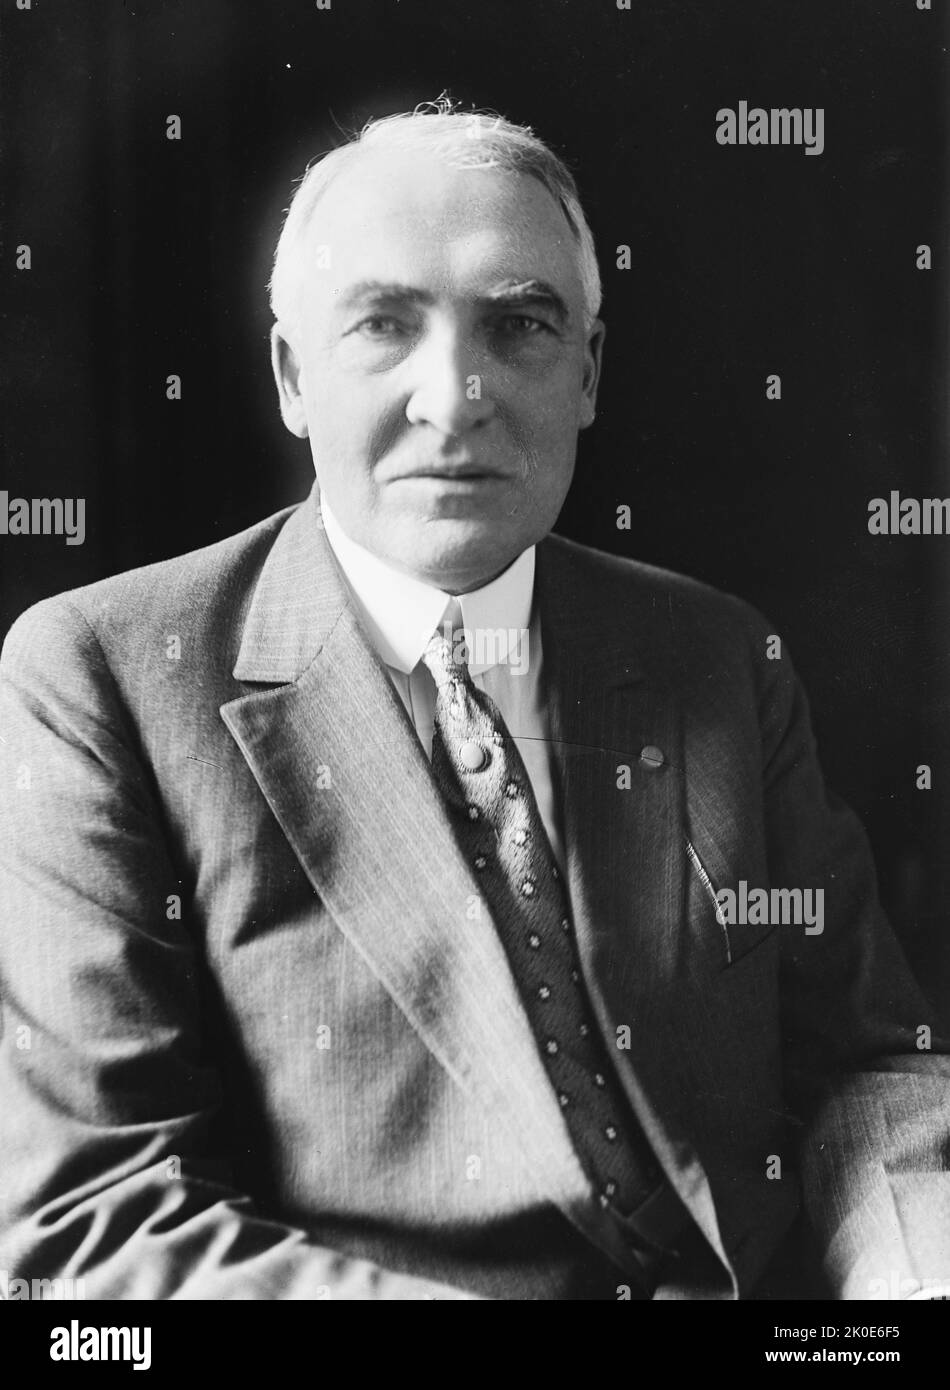 Warren Gamaliel Harding (2 novembre 1865 - 2 août 1923) a été le président des États-Unis en 29th, en service de 1921 jusqu'à sa mort en 1923. Membre du parti républicain. Banque D'Images